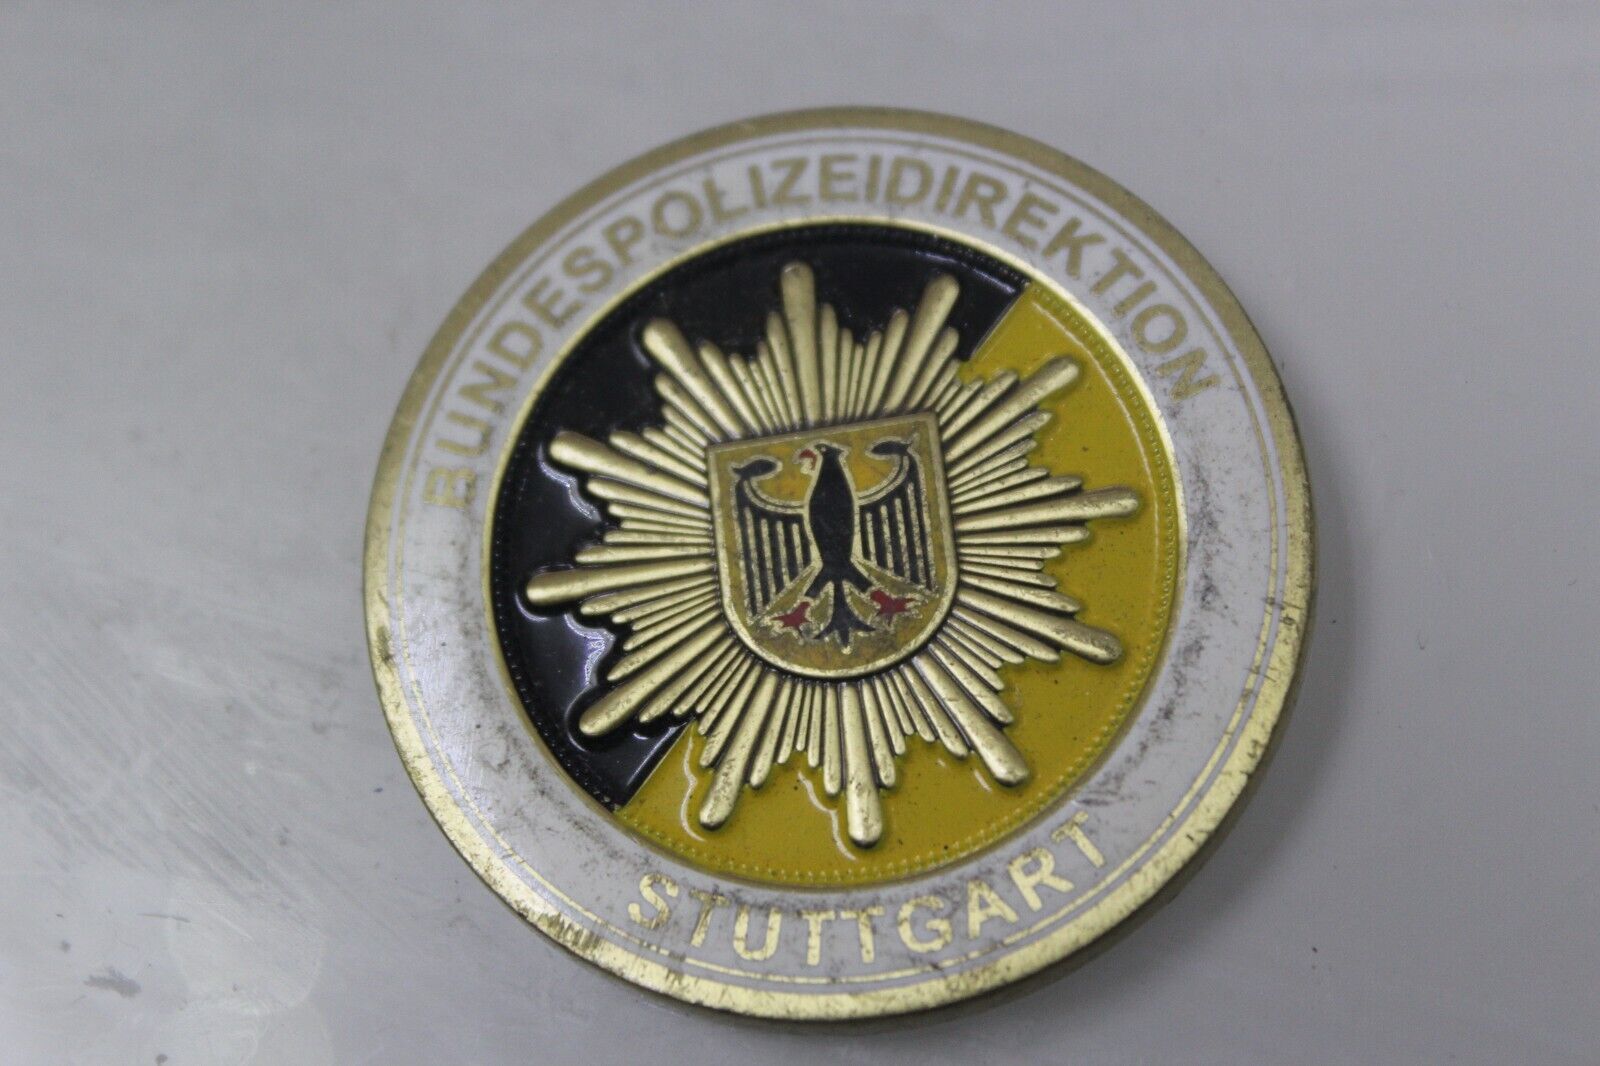 Bundespolizeidirektion Stuttgart Germany Challenge Coin